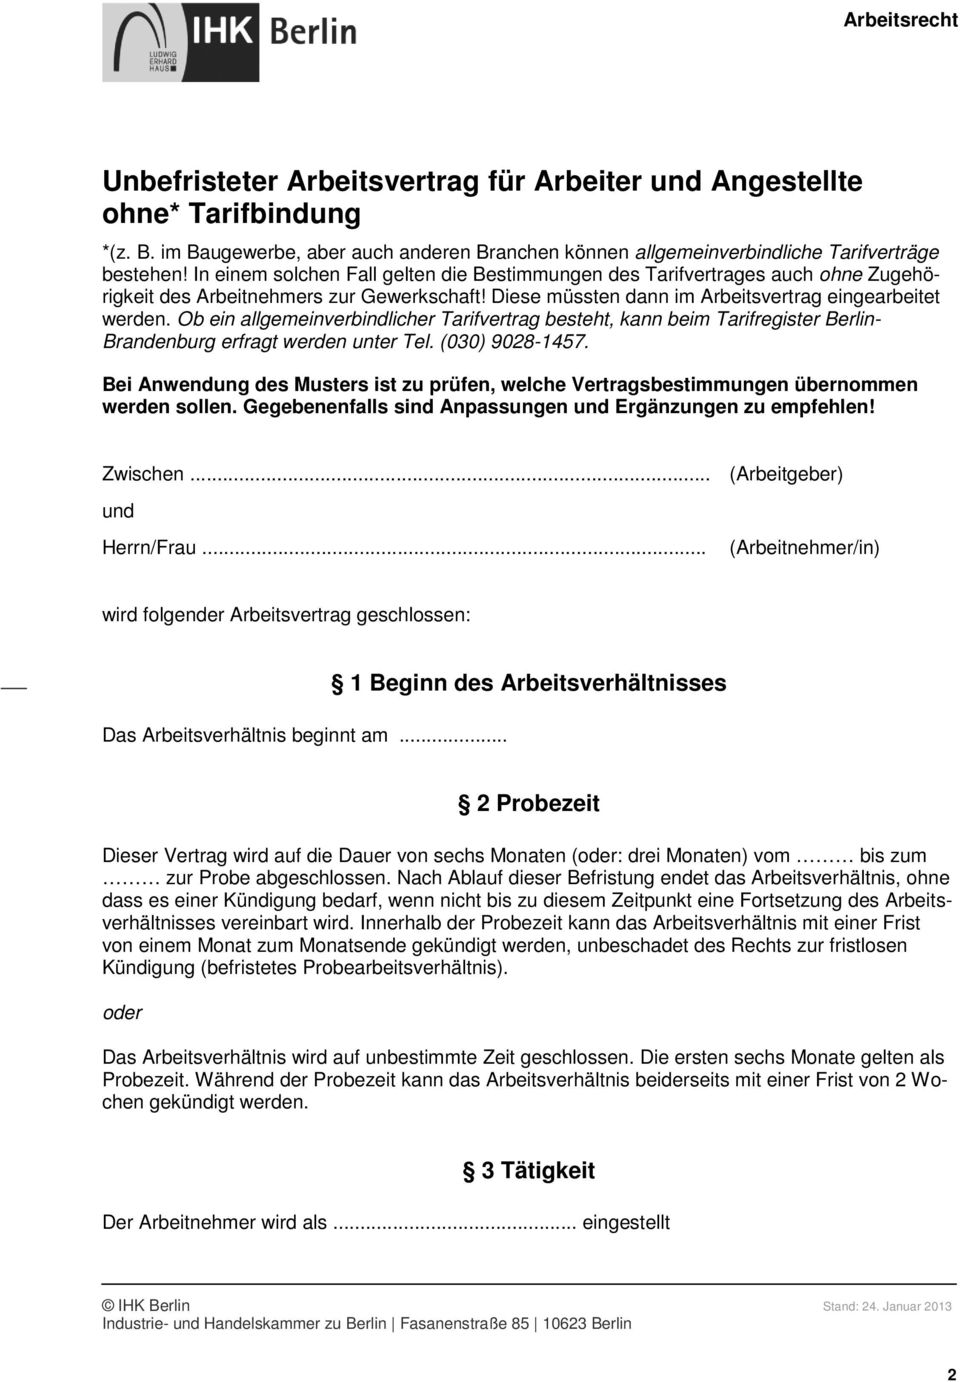 Ob ein allgemeinverbindlicher Tarifvertrag besteht, kann beim Tarifregister Berlin- Brandenburg erfragt werden unter Tel. (030) 9028-1457.